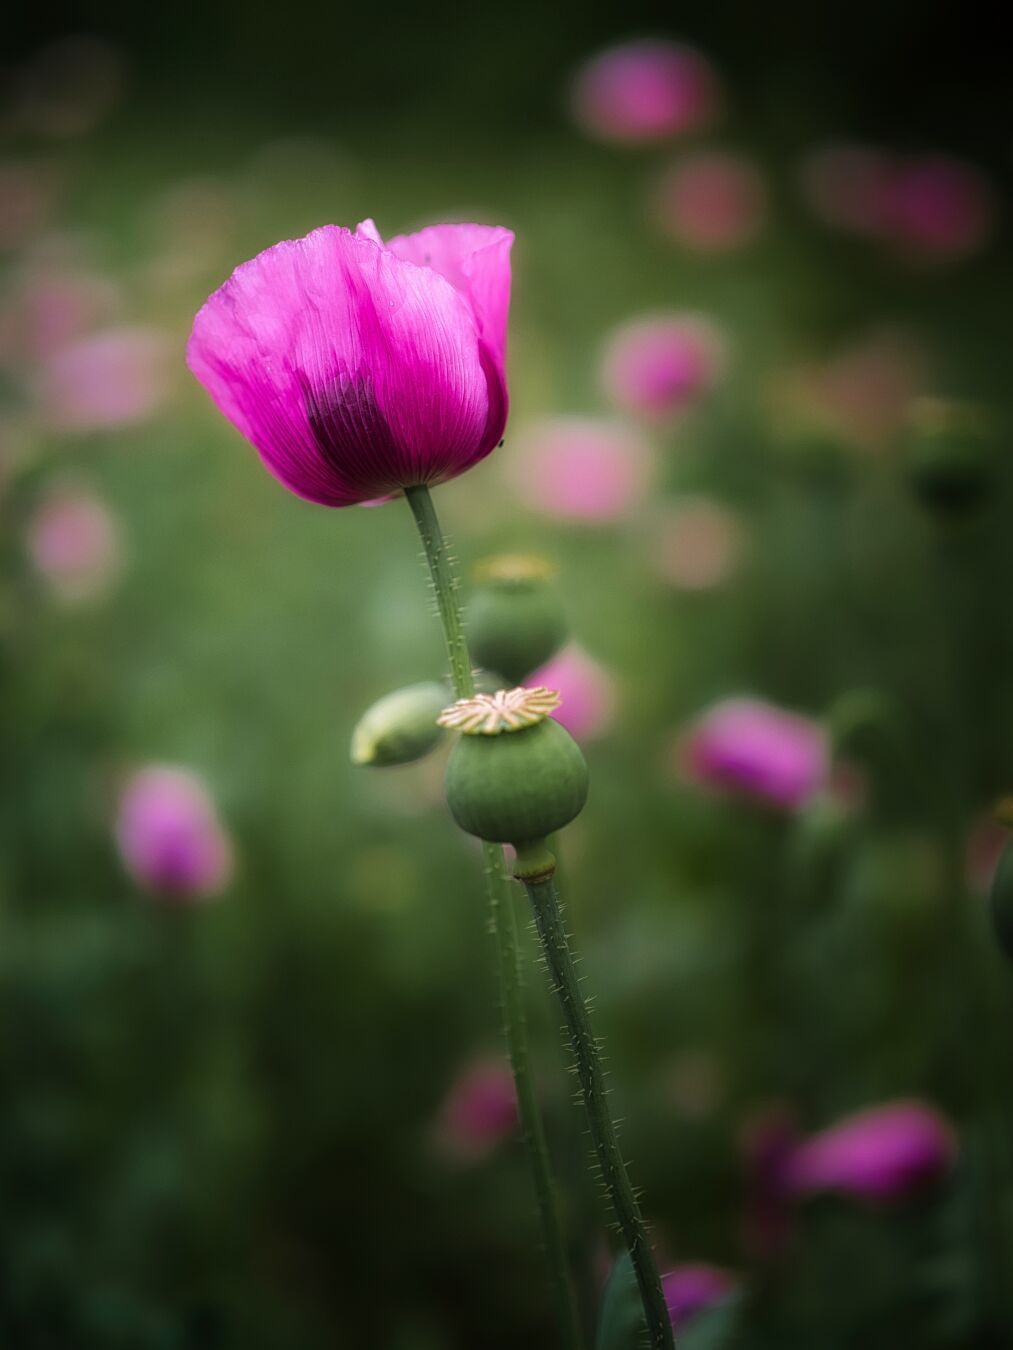 Think pink!

#poppy #poppyflower #mothernature #photography